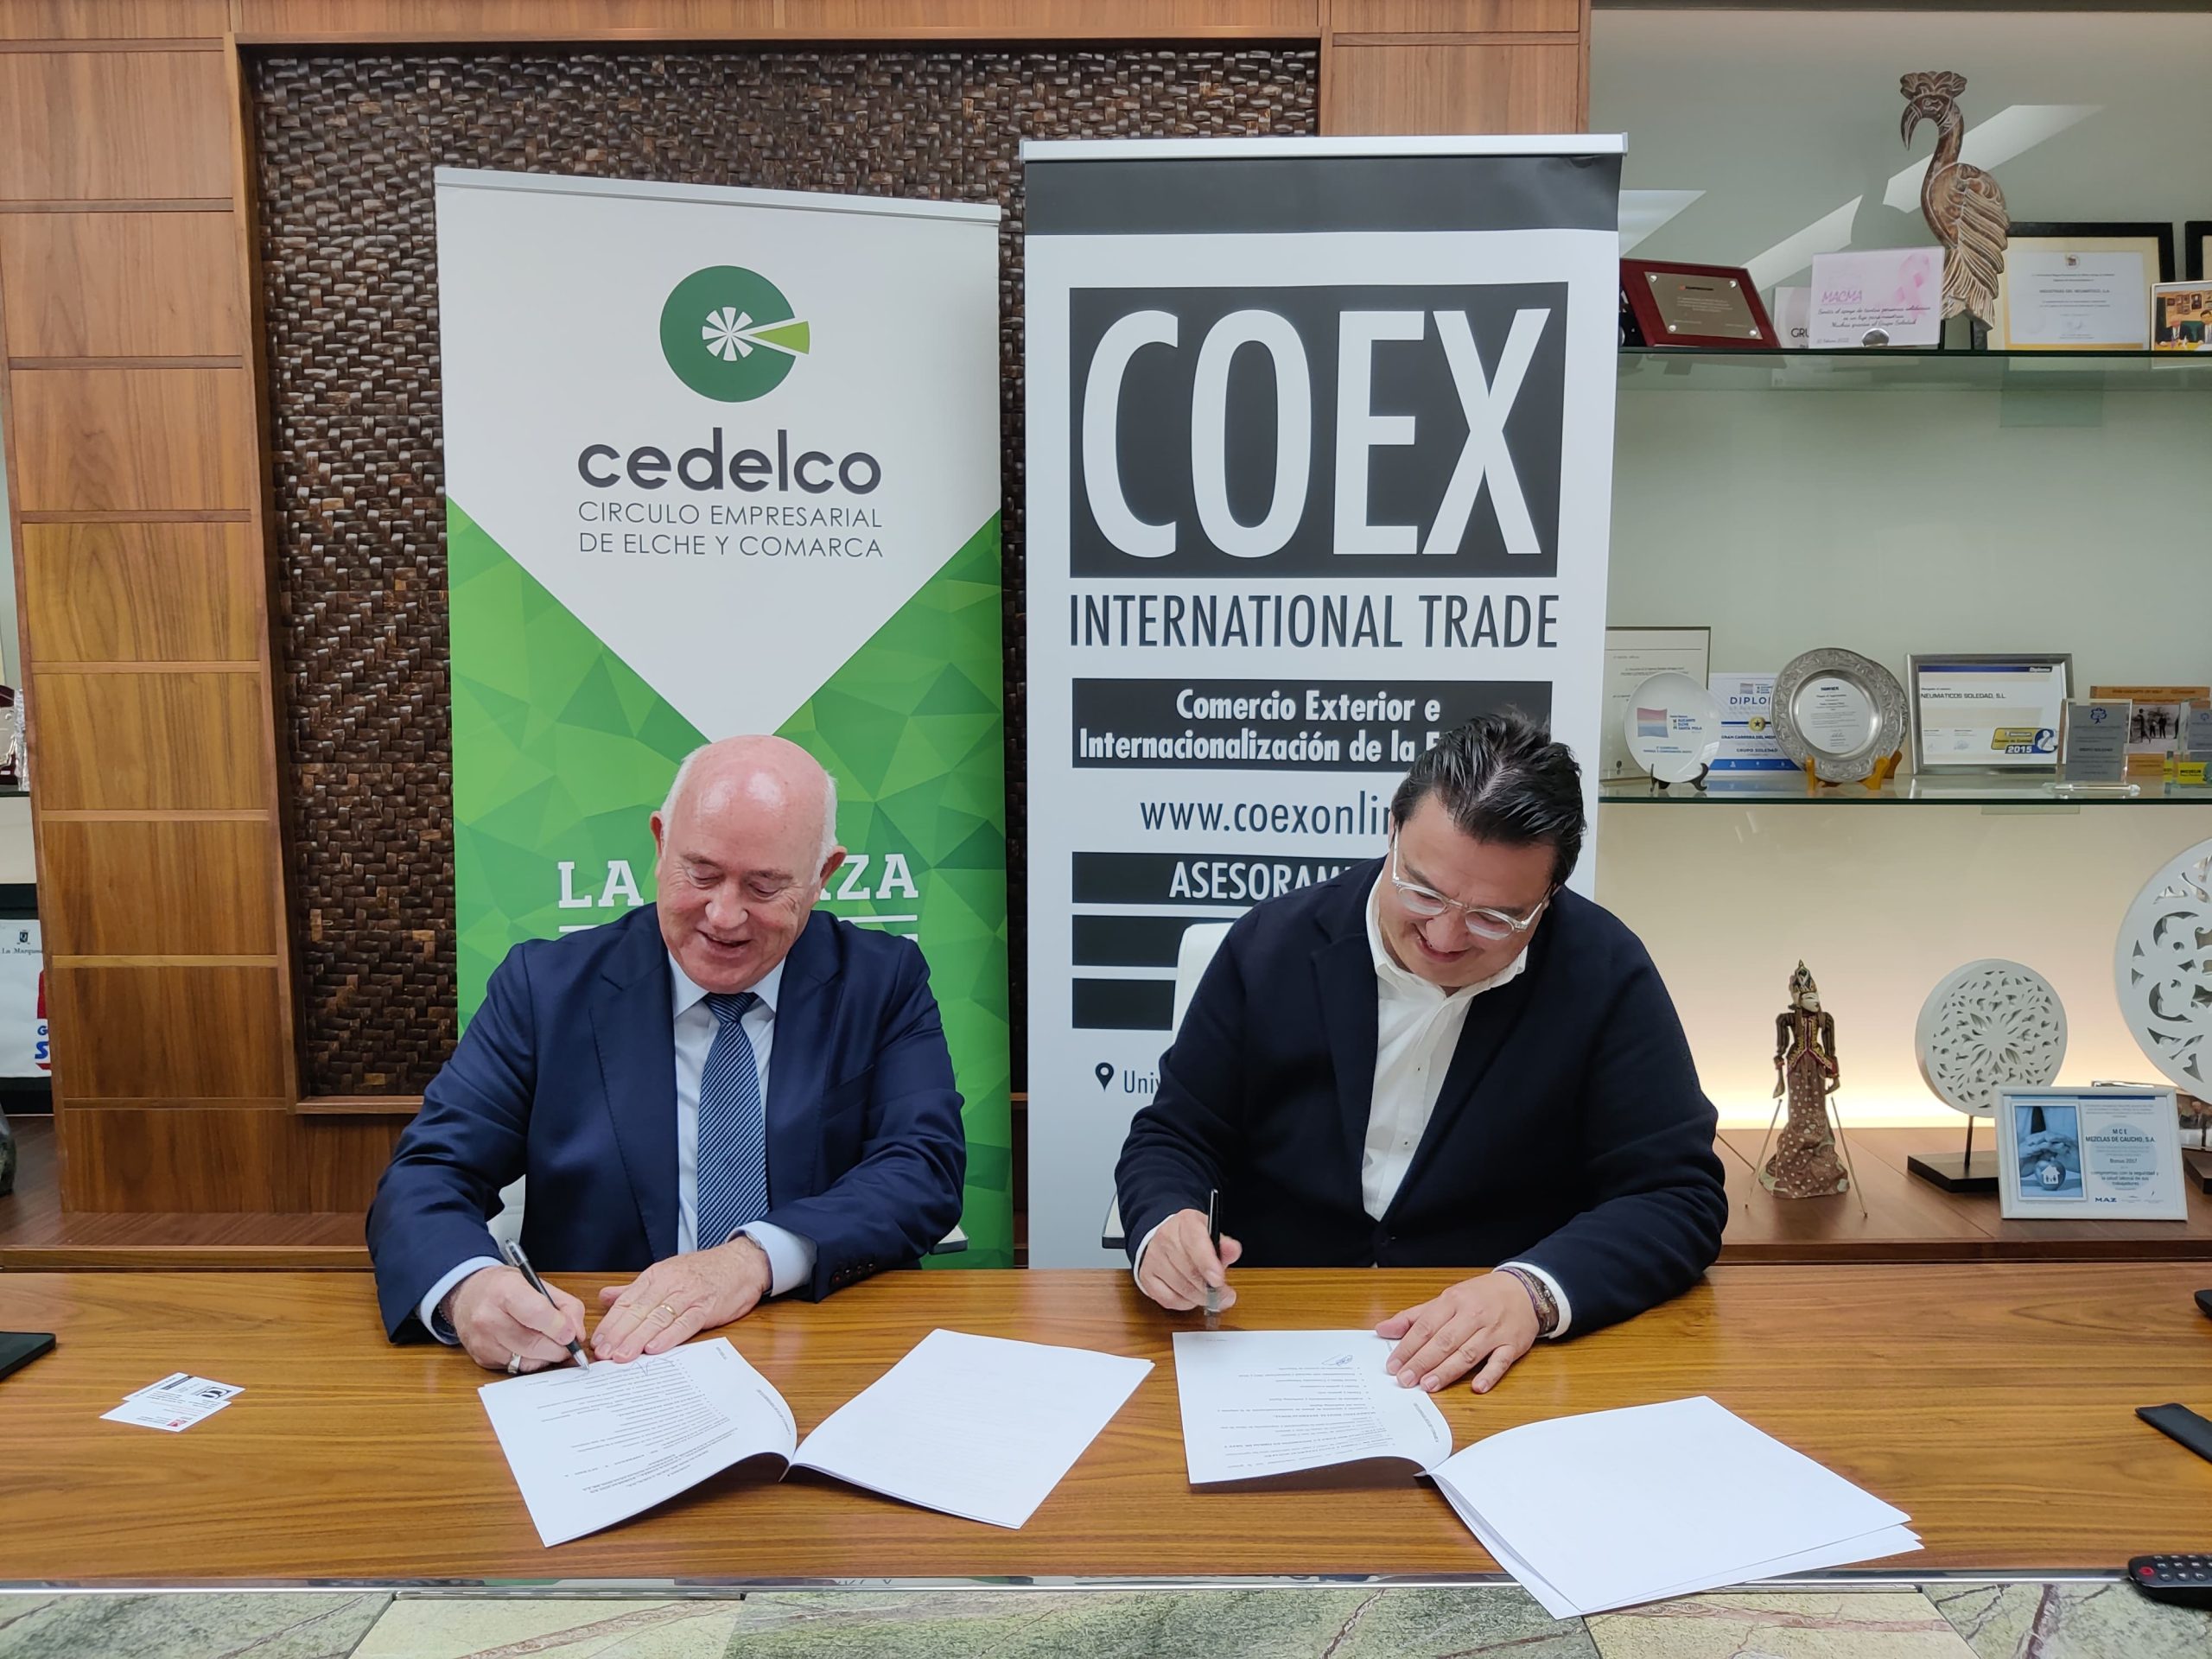 Featured image for “COEX International Trade firma un convenio de colaboración con  Cedelco en apoyo al tejido empresarial de Elche y Comarca”